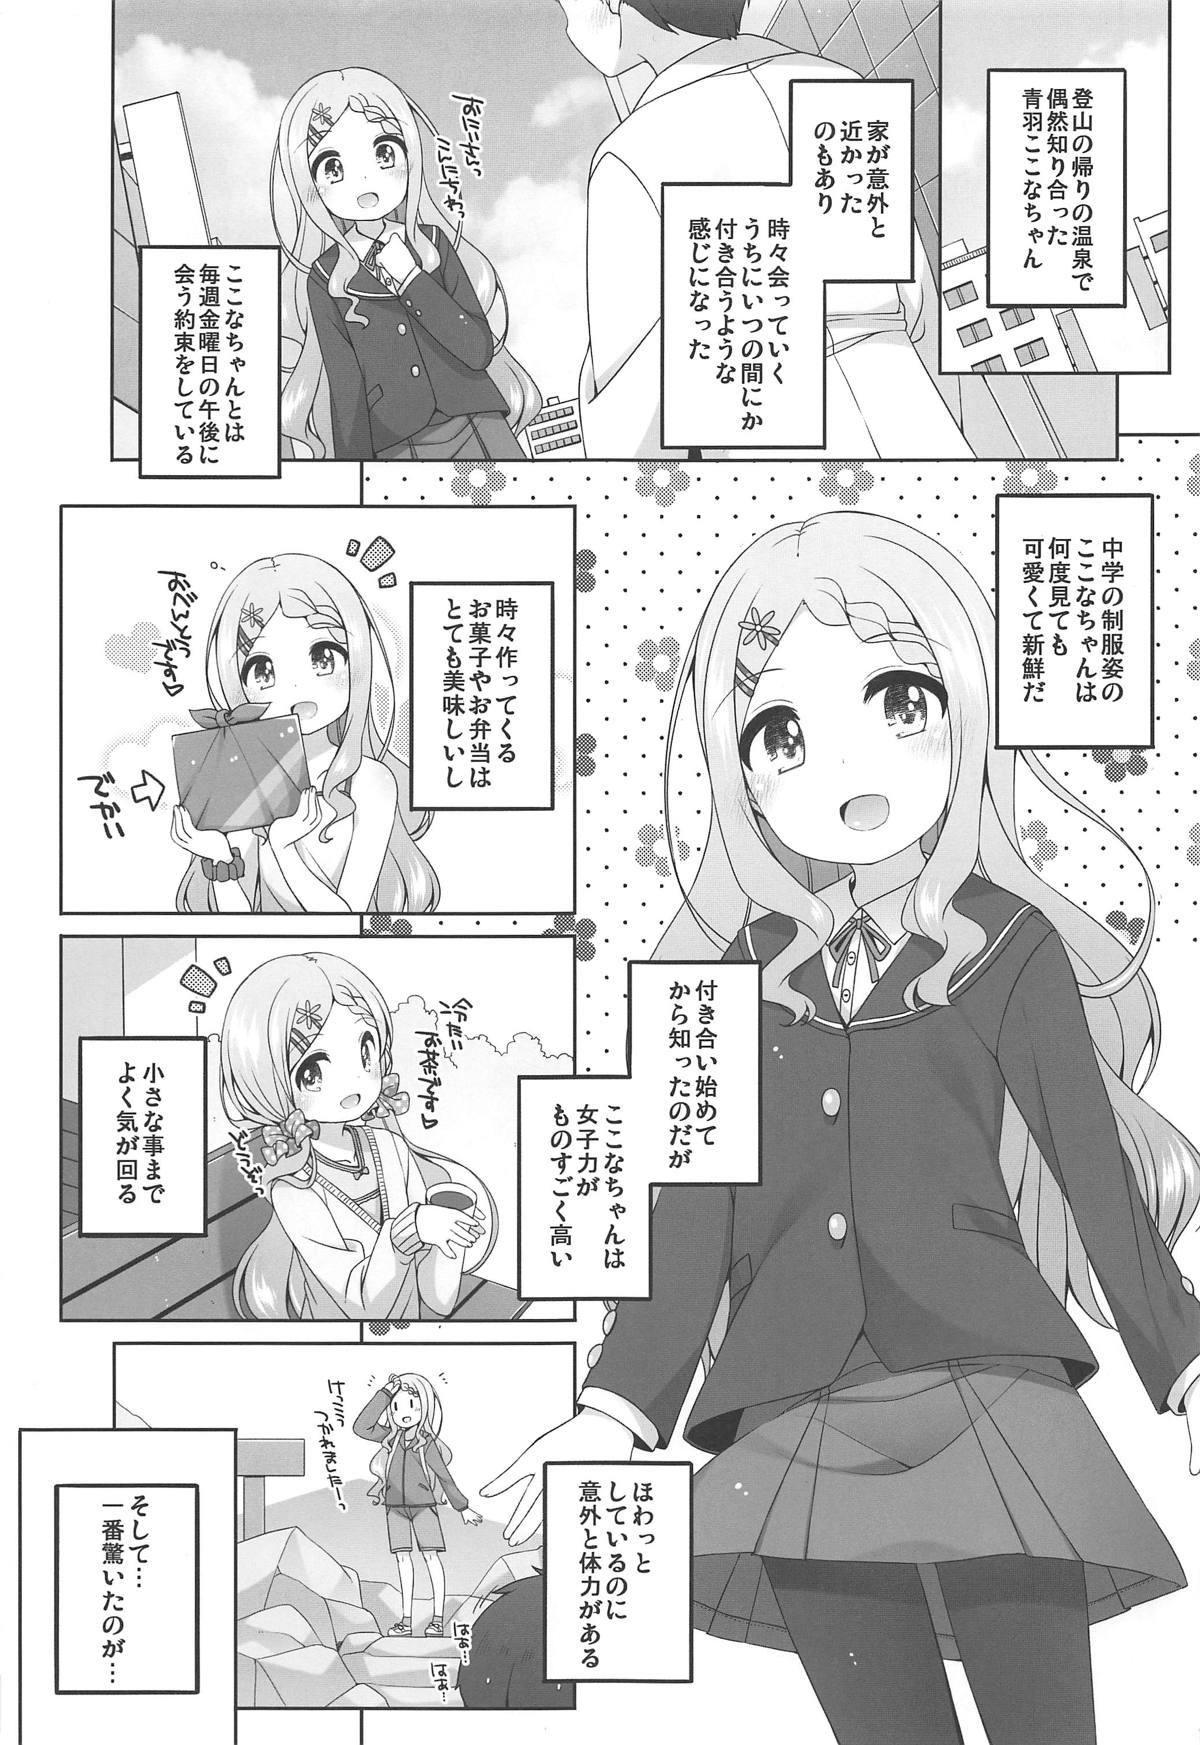 Bailando Kokona-chan Kawaii. - Yama no susume Lez Hardcore - Page 4